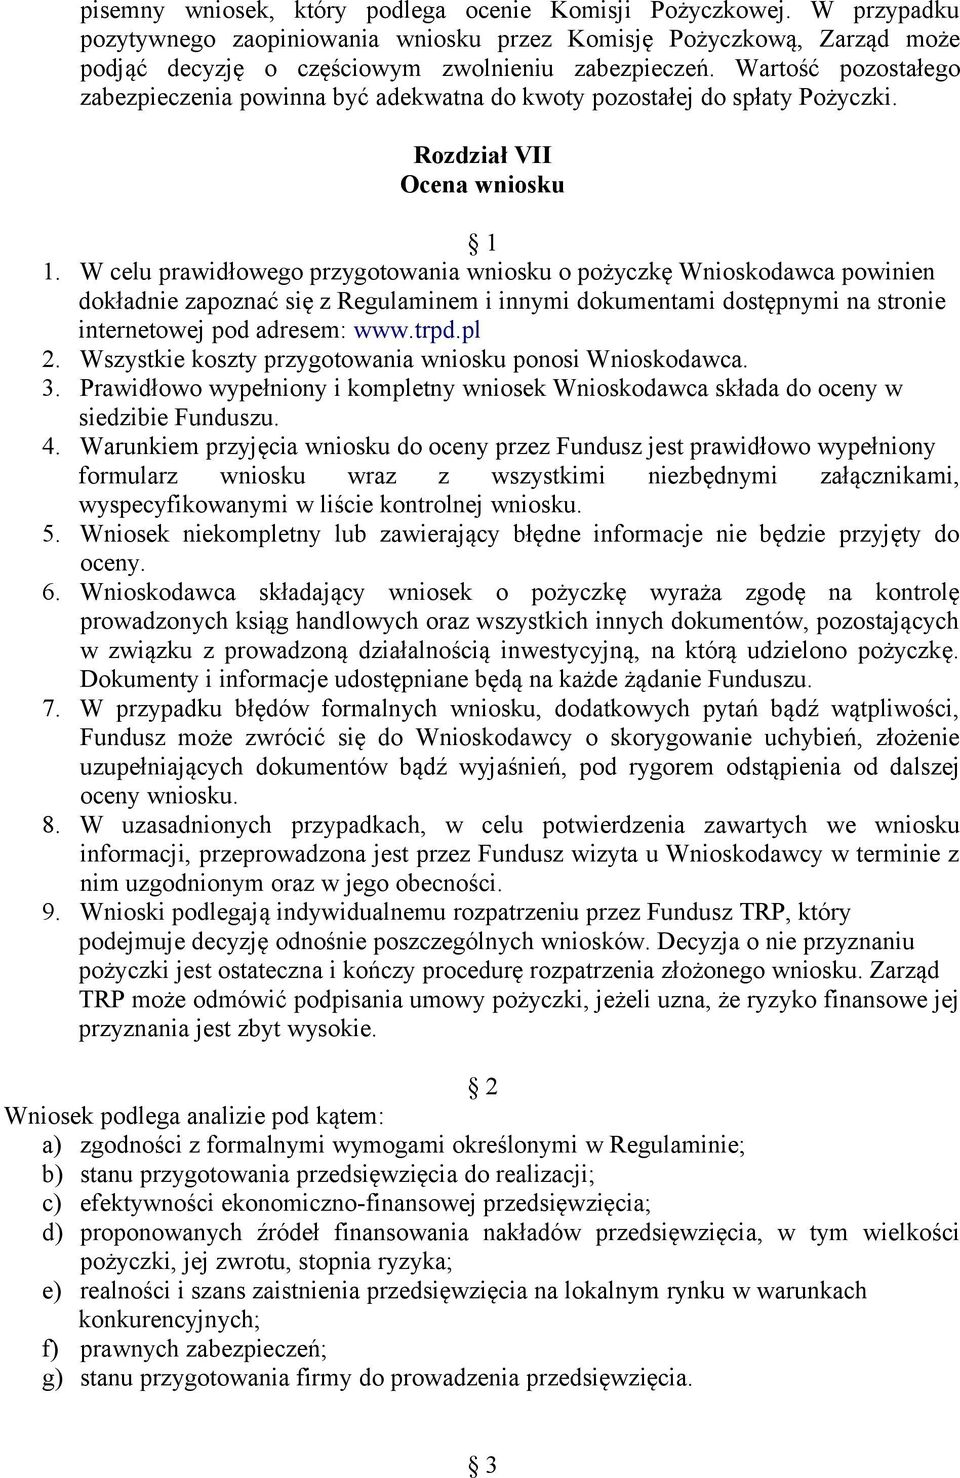 W celu prawidłowego przygotowania wniosku o pożyczkę Wnioskodawca powinien dokładnie zapoznać się z Regulaminem i innymi dokumentami dostępnymi na stronie internetowej pod adresem: www.trpd.pl 2.